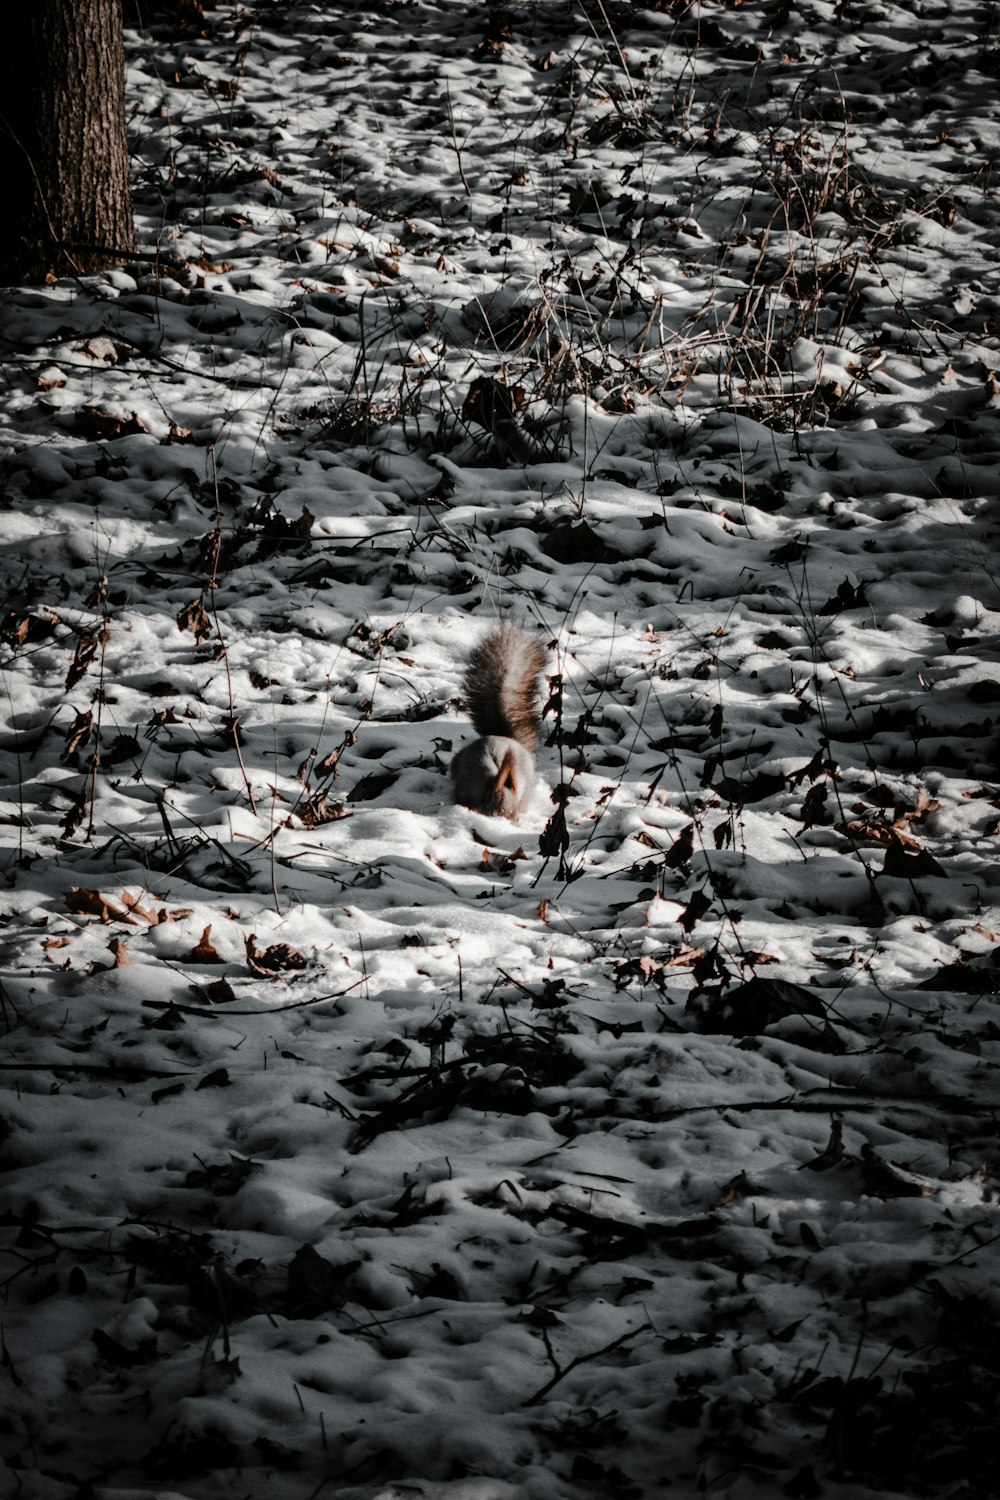 animal marrom e branco no solo coberto de neve durante o dia